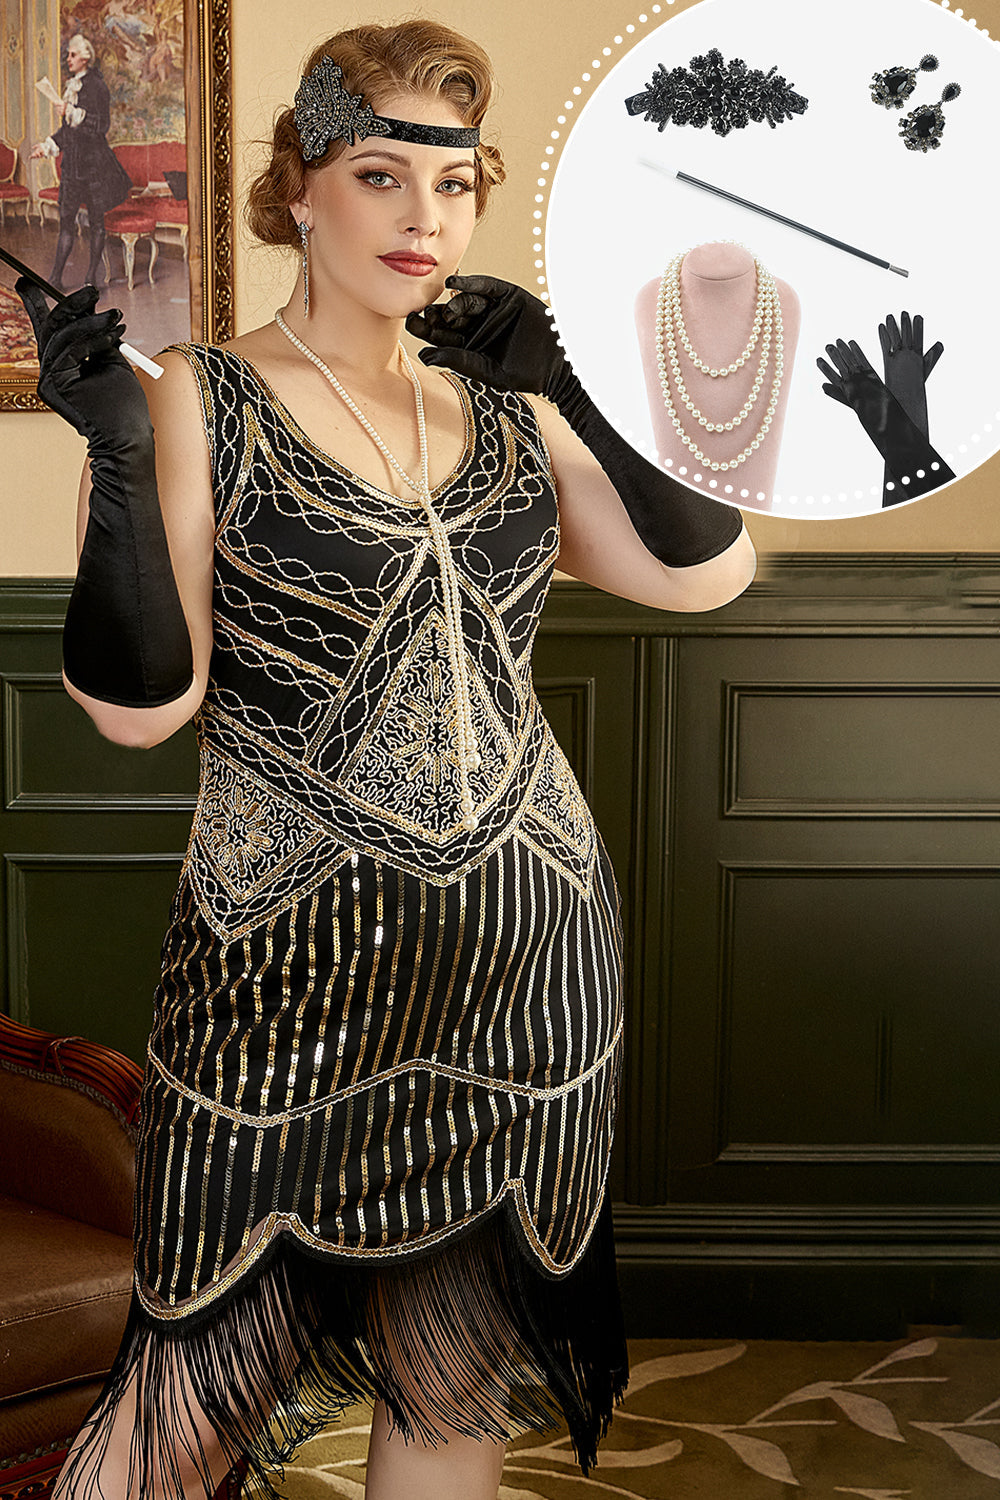 Svart gylden 1920-tallet Plus Size kjole med 20s tilbehør sett